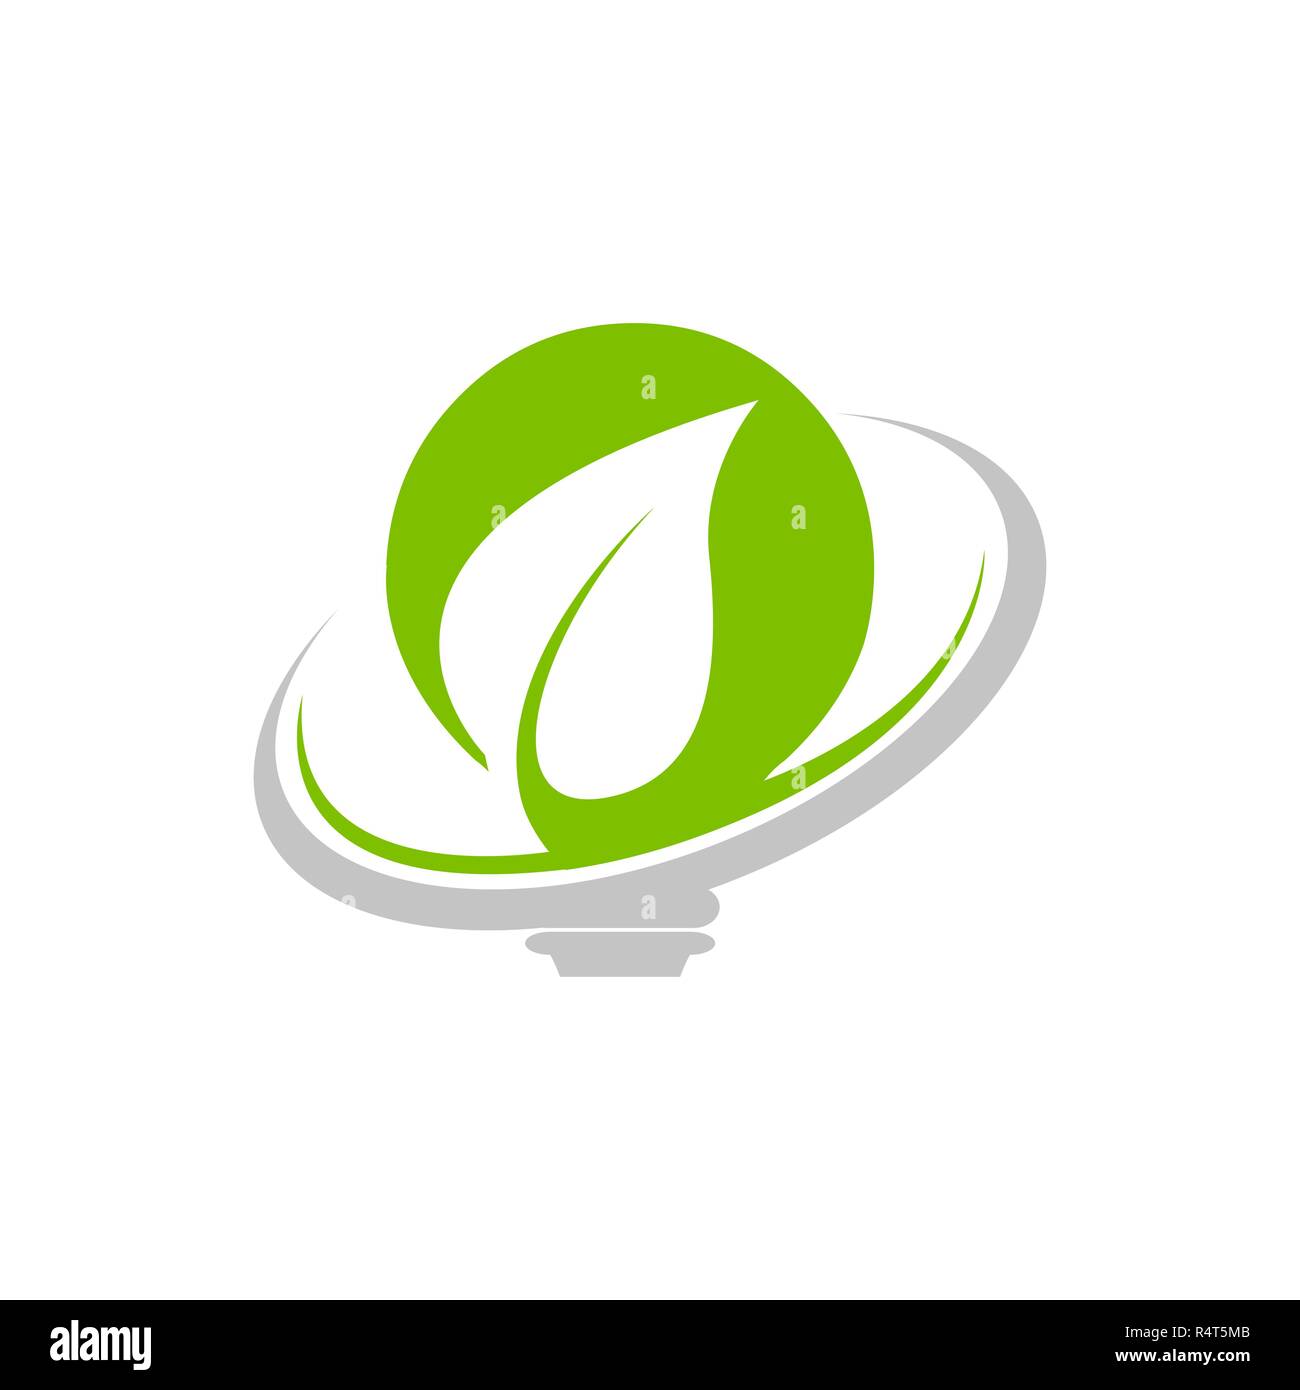 Energie sparen Eco concept Symbol für grüne Ökologie Umwelt- und Naturschutz speichern oder Erhaltung Stock Vektor